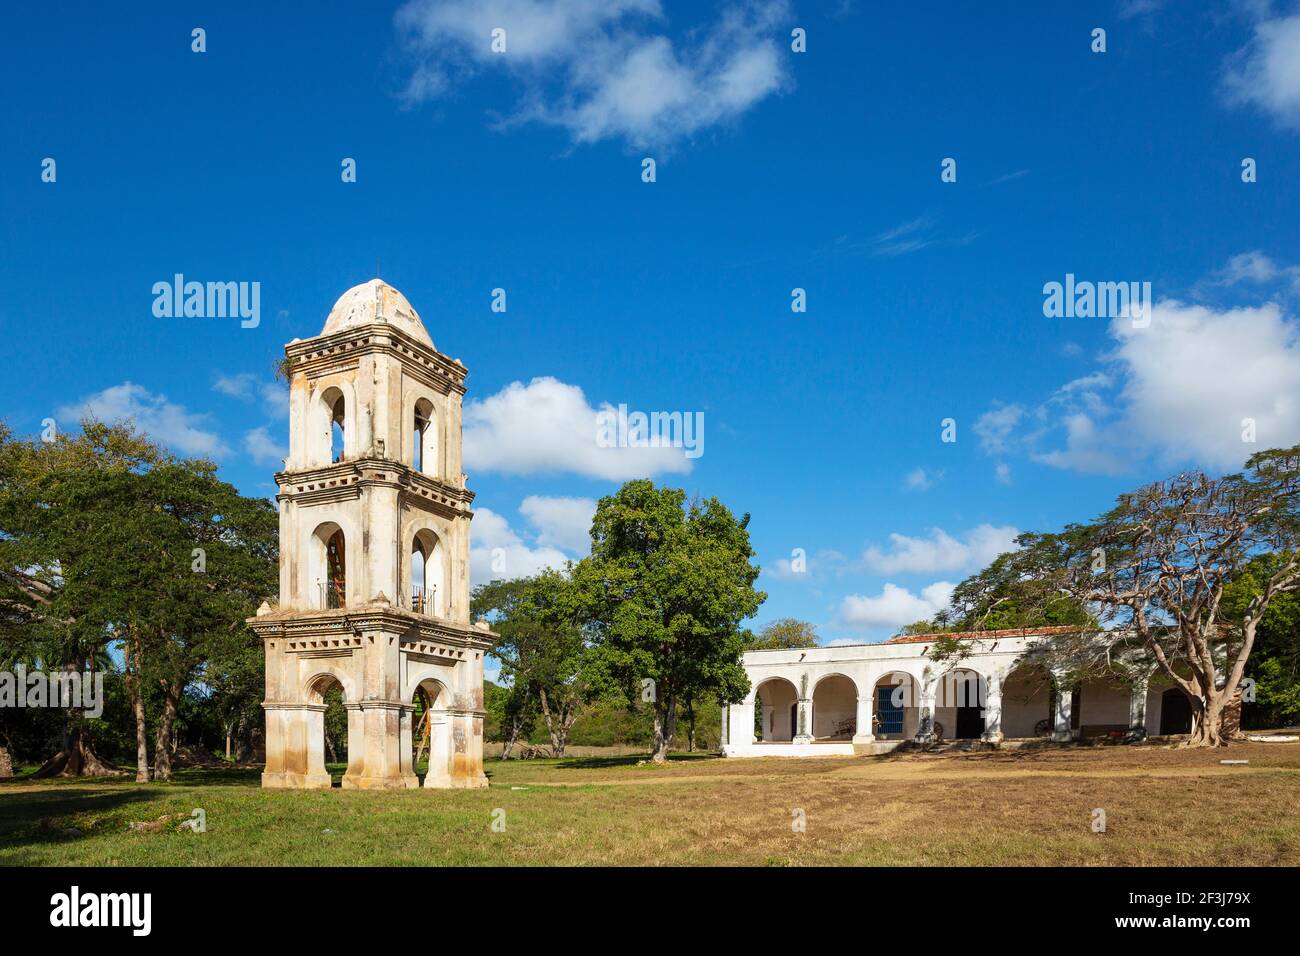 The bell tower of Ingenio San Isidro de los Destiladeros in the Los Ingenios valley, Cuba Stock Photo